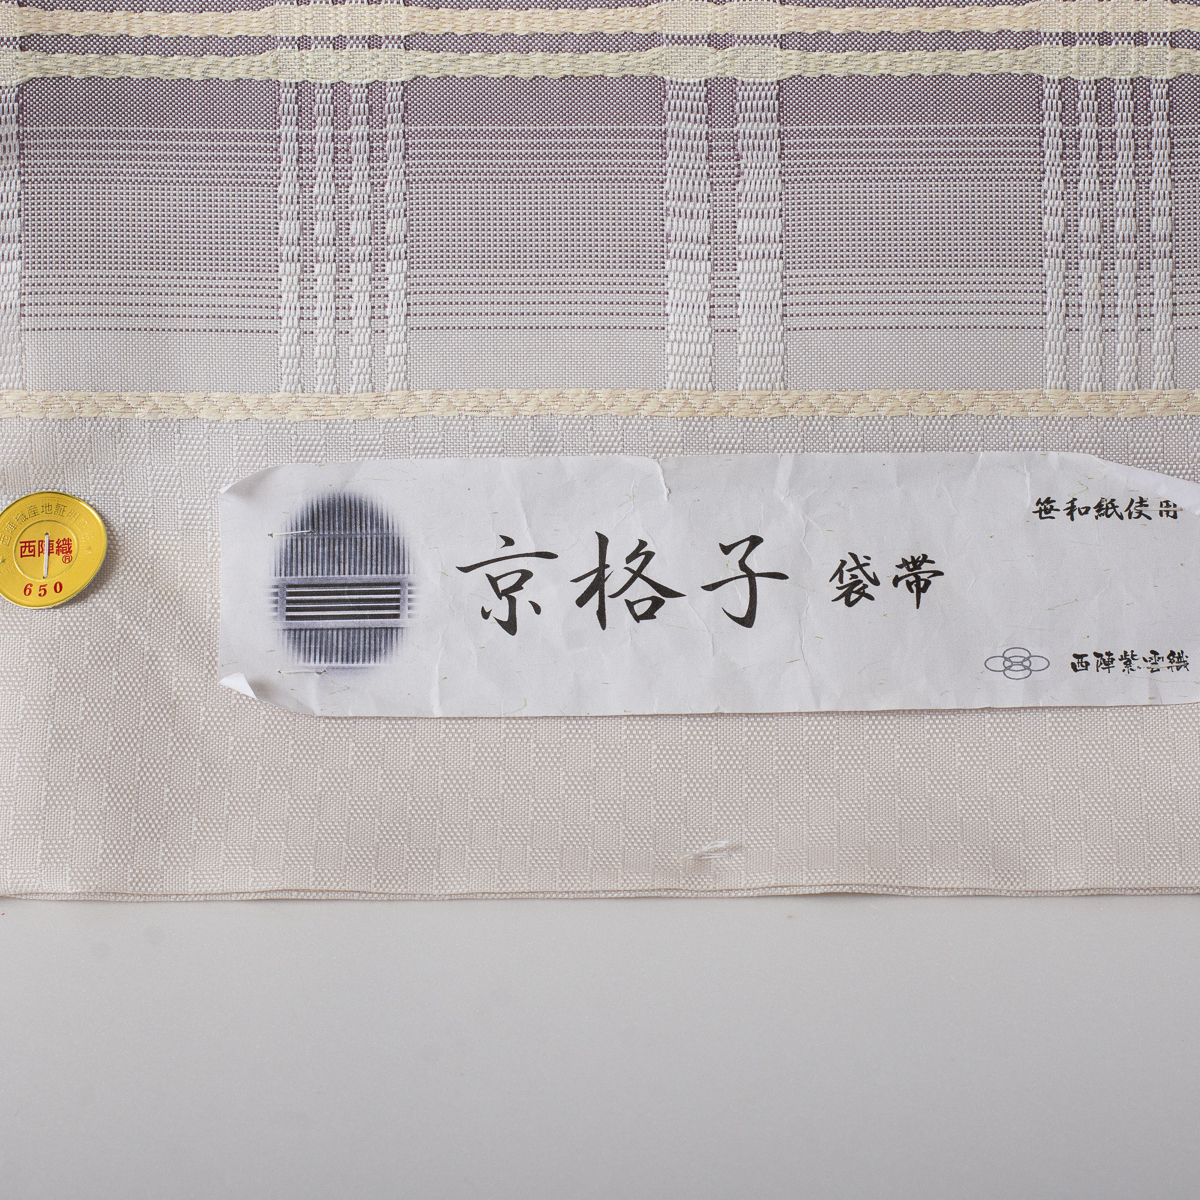 西陣織 正絹おしゃれ袋帯【京格子】田中伝 笹和紙使用 梅鼠・藤色 六通